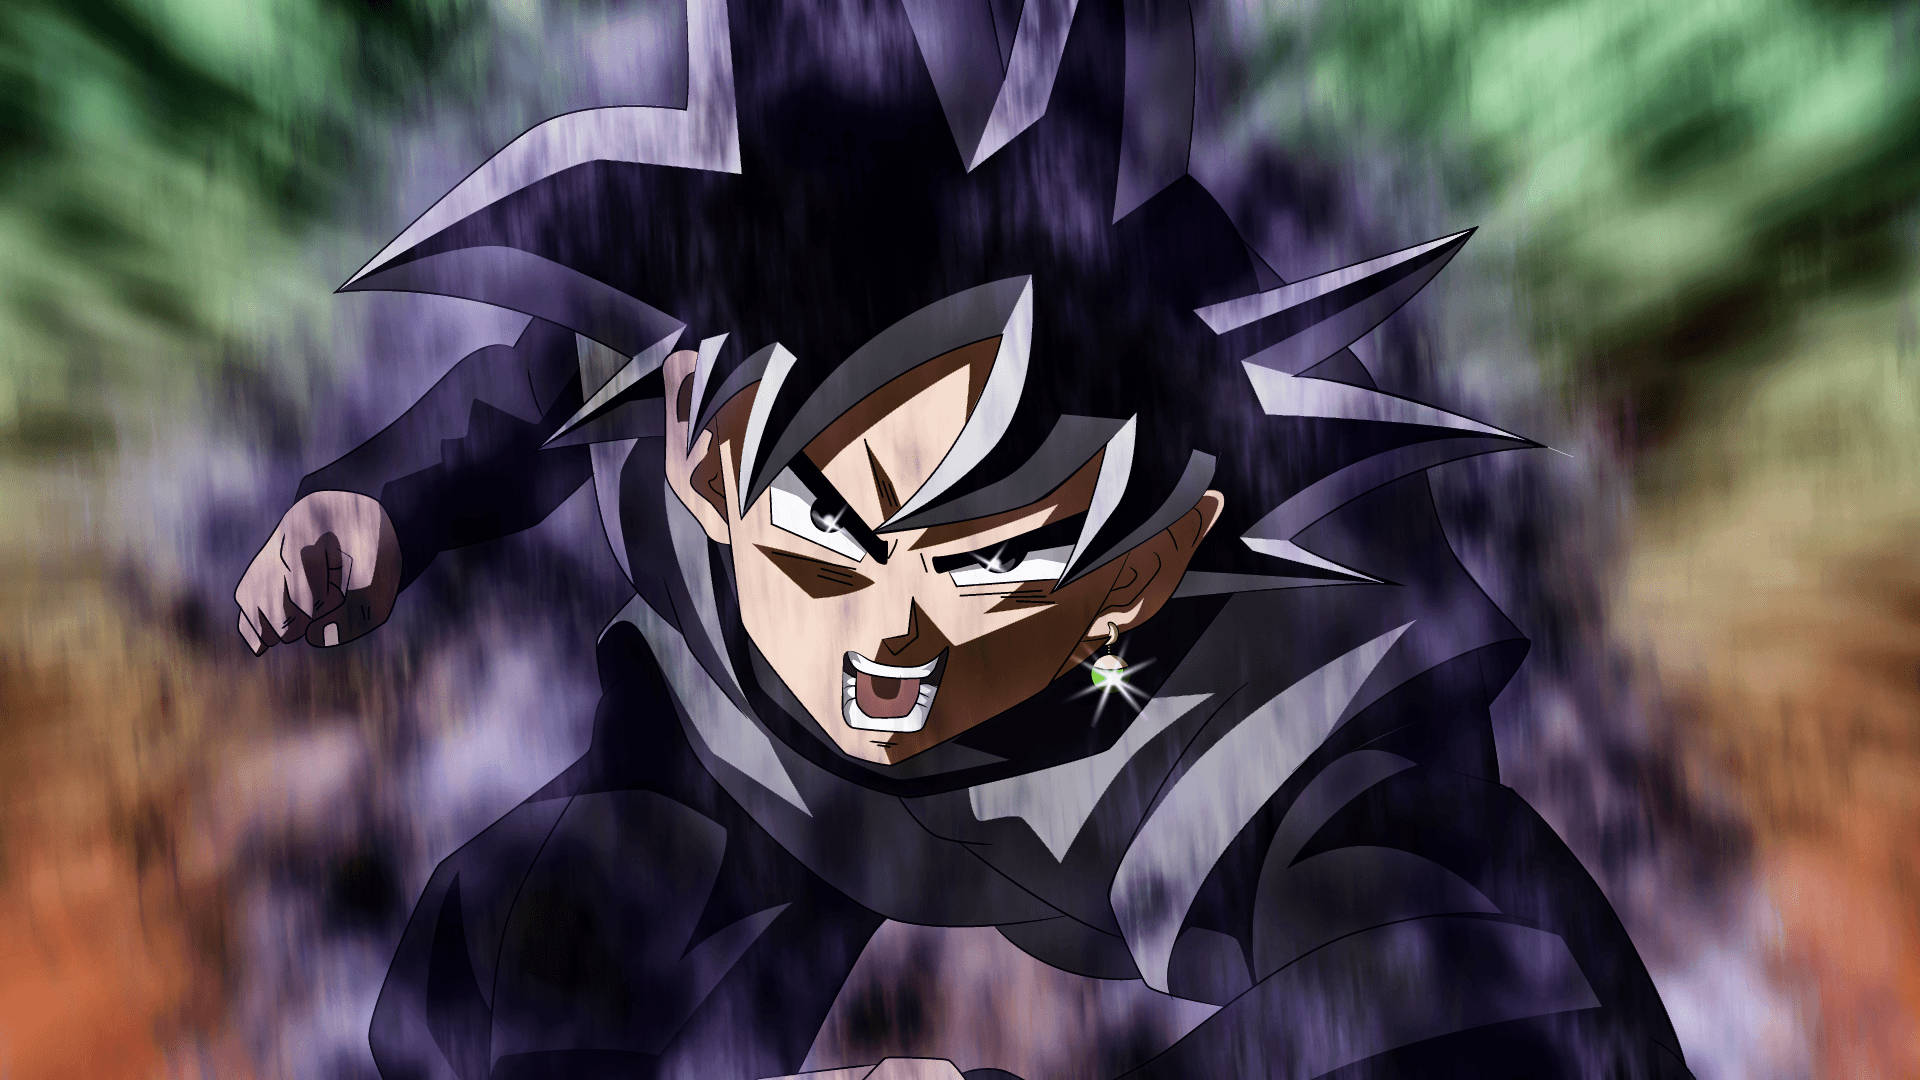 Black Goku With Gloomy Aura Background